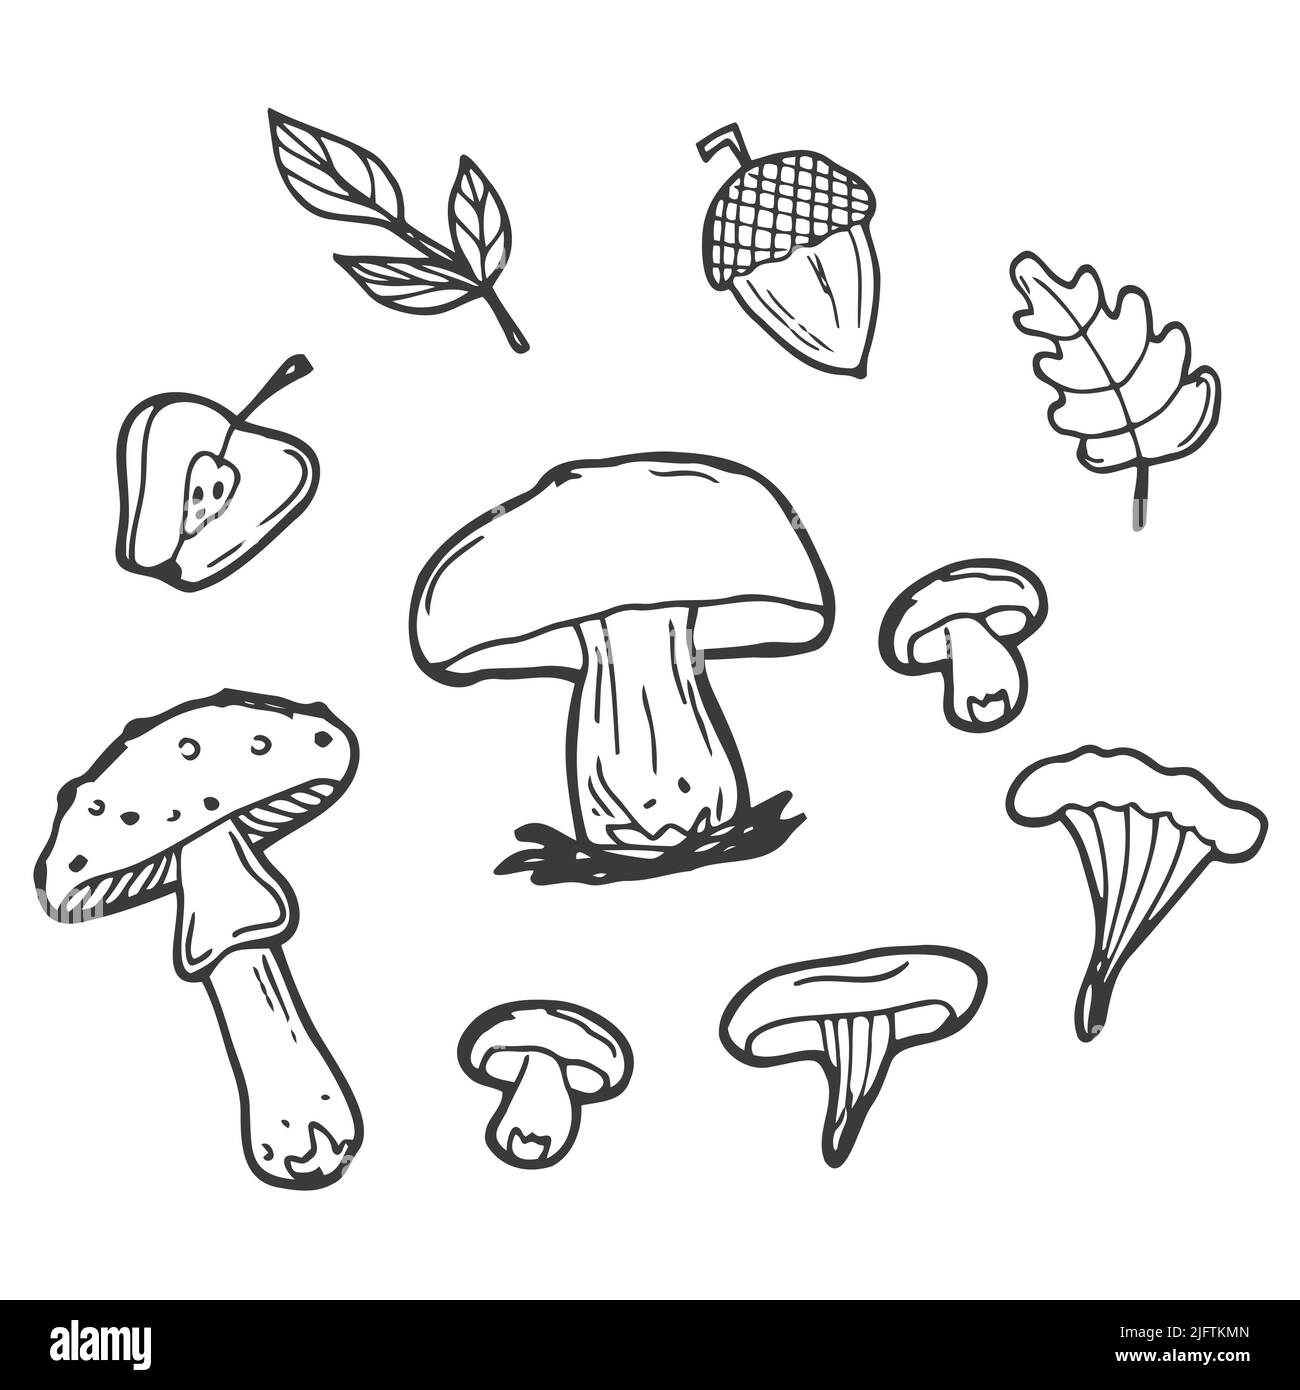 Un décor d'automne sur fond blanc. Illustration vectorielle noire et blanche d'un ensemble automnal d'acornes, de feuilles et de champignons. Objets isolés Illustration de Vecteur